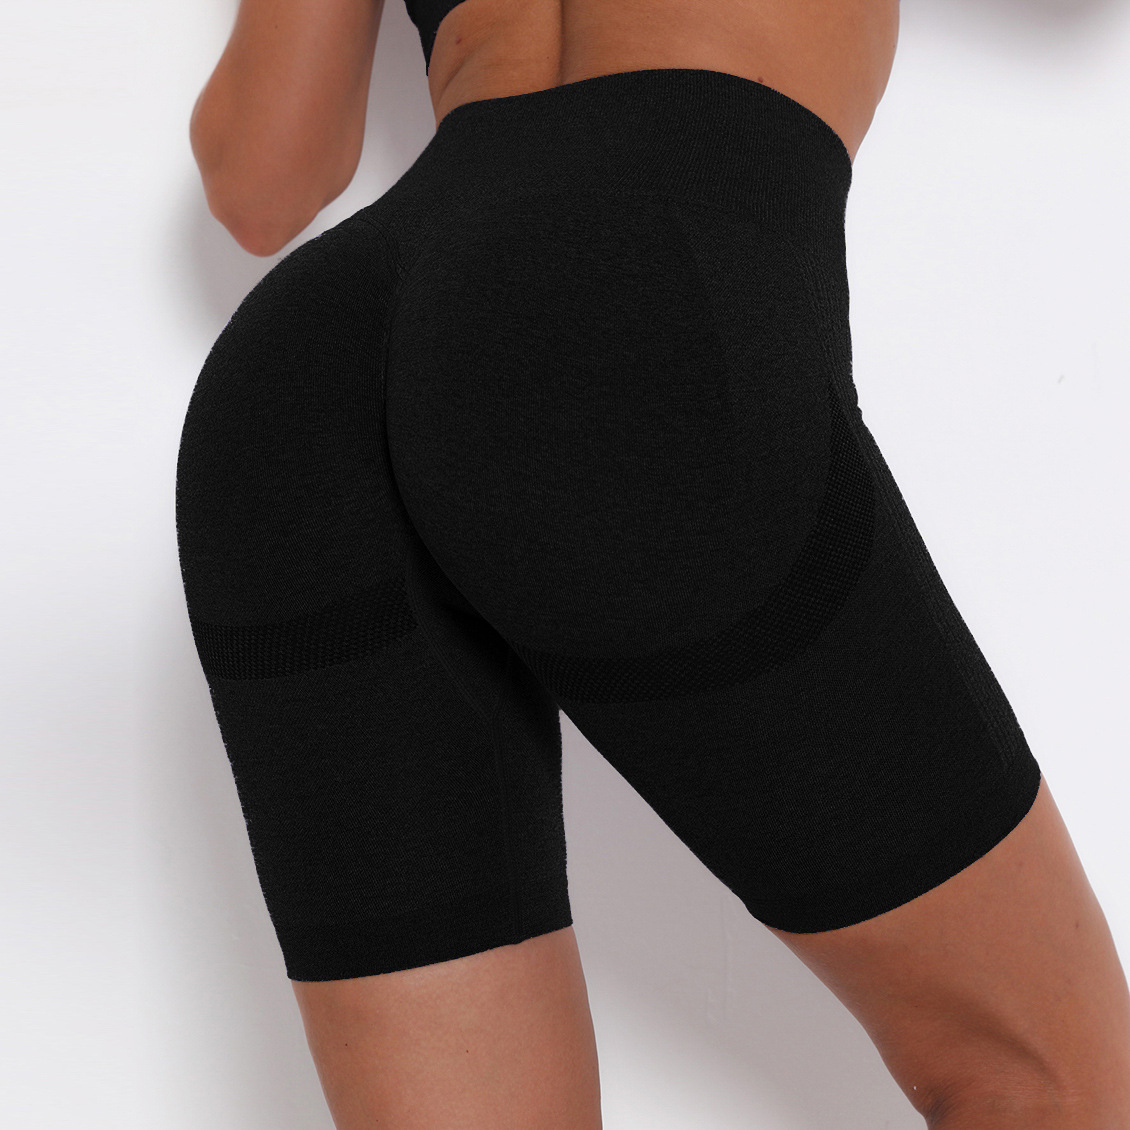 Butt Lift Sports Shorts High Waist Hot Shorts Yoga Pants Women